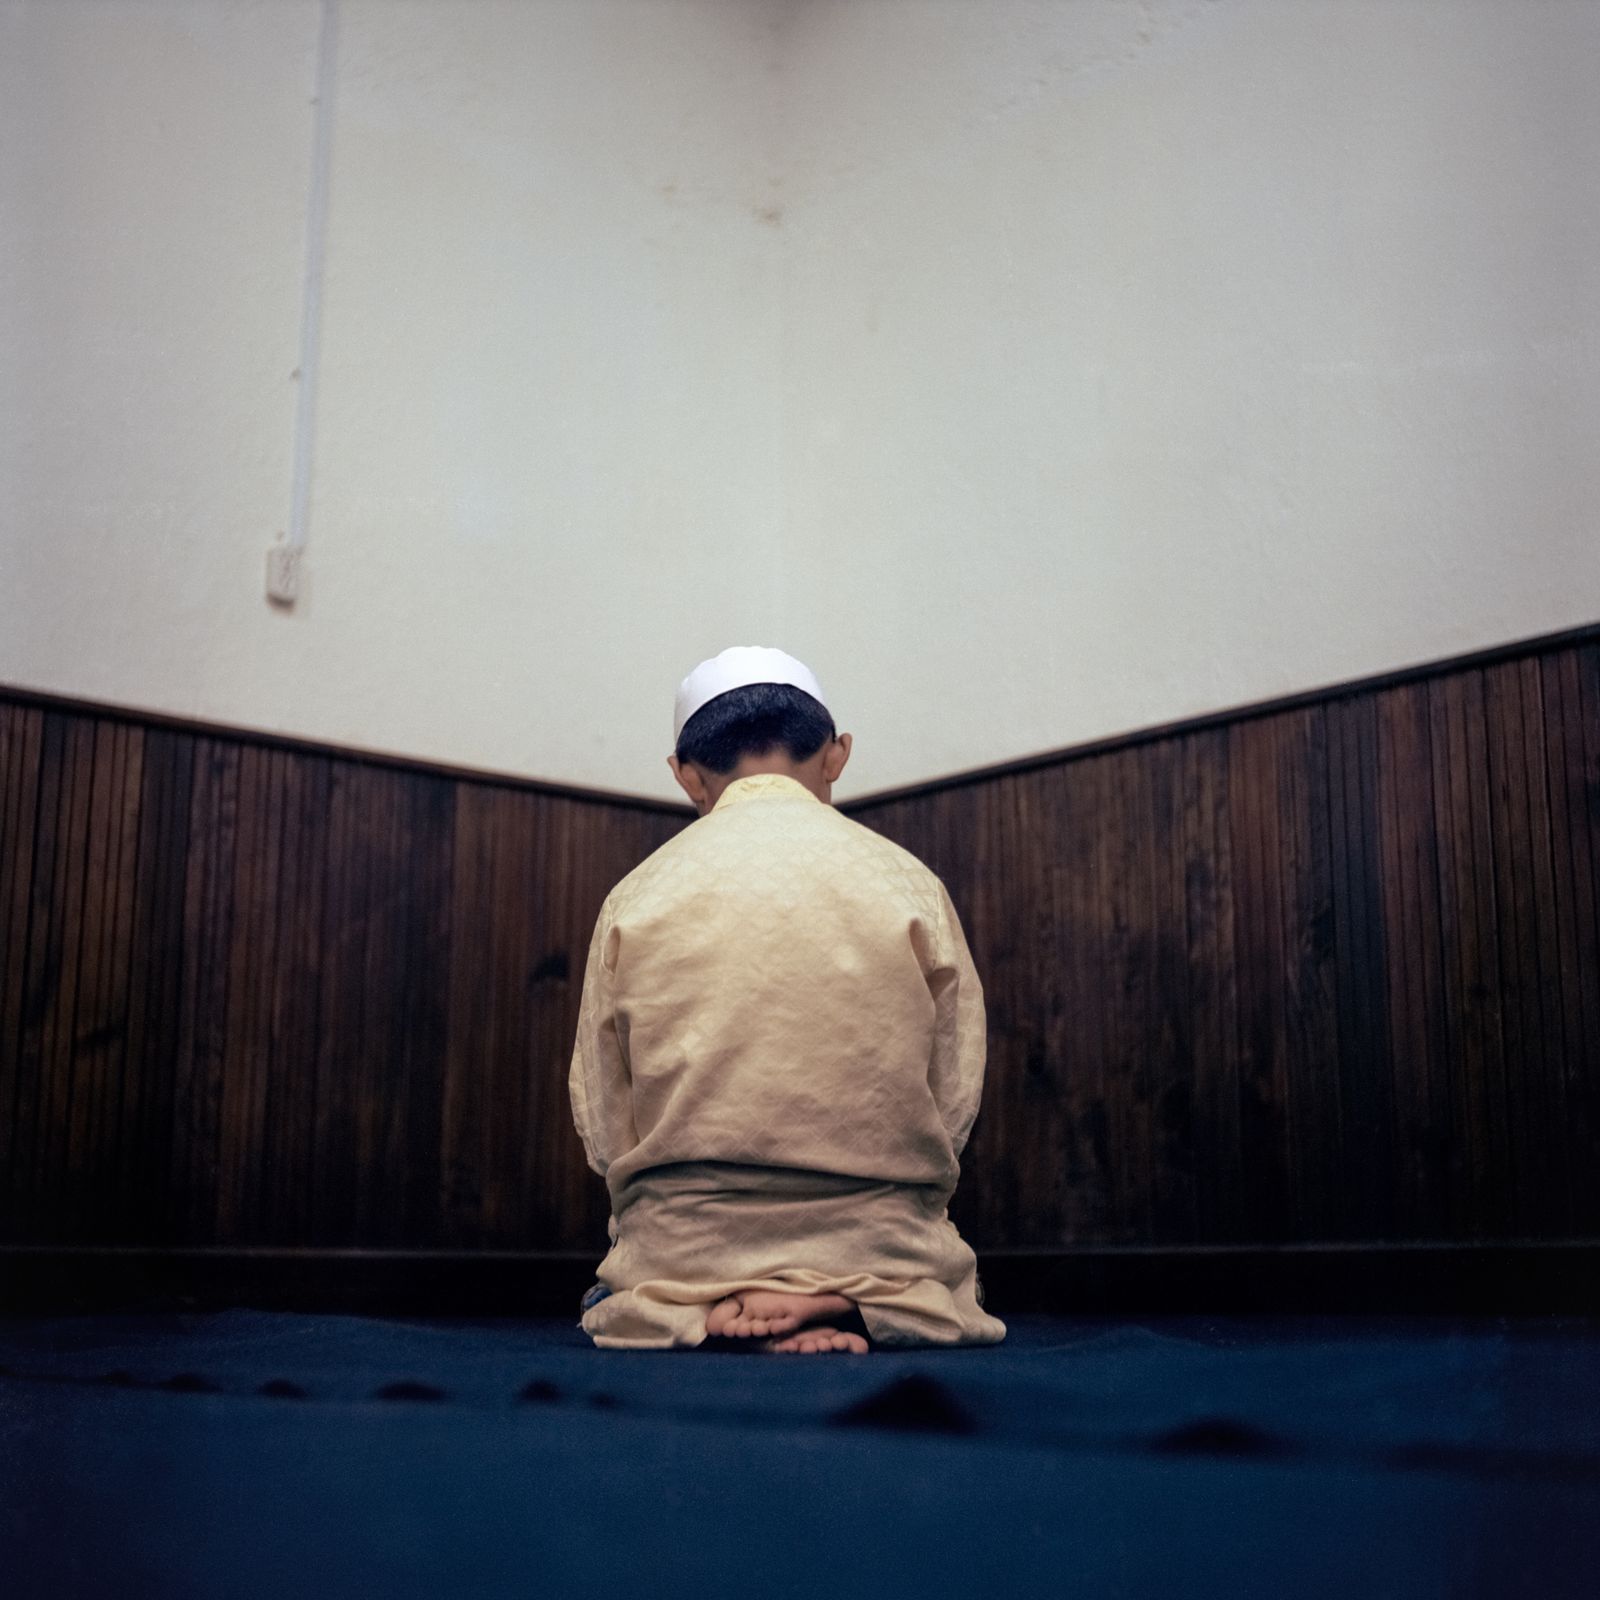 © Giulia Iacolutti - Child praying in the Ahmadi mosque.